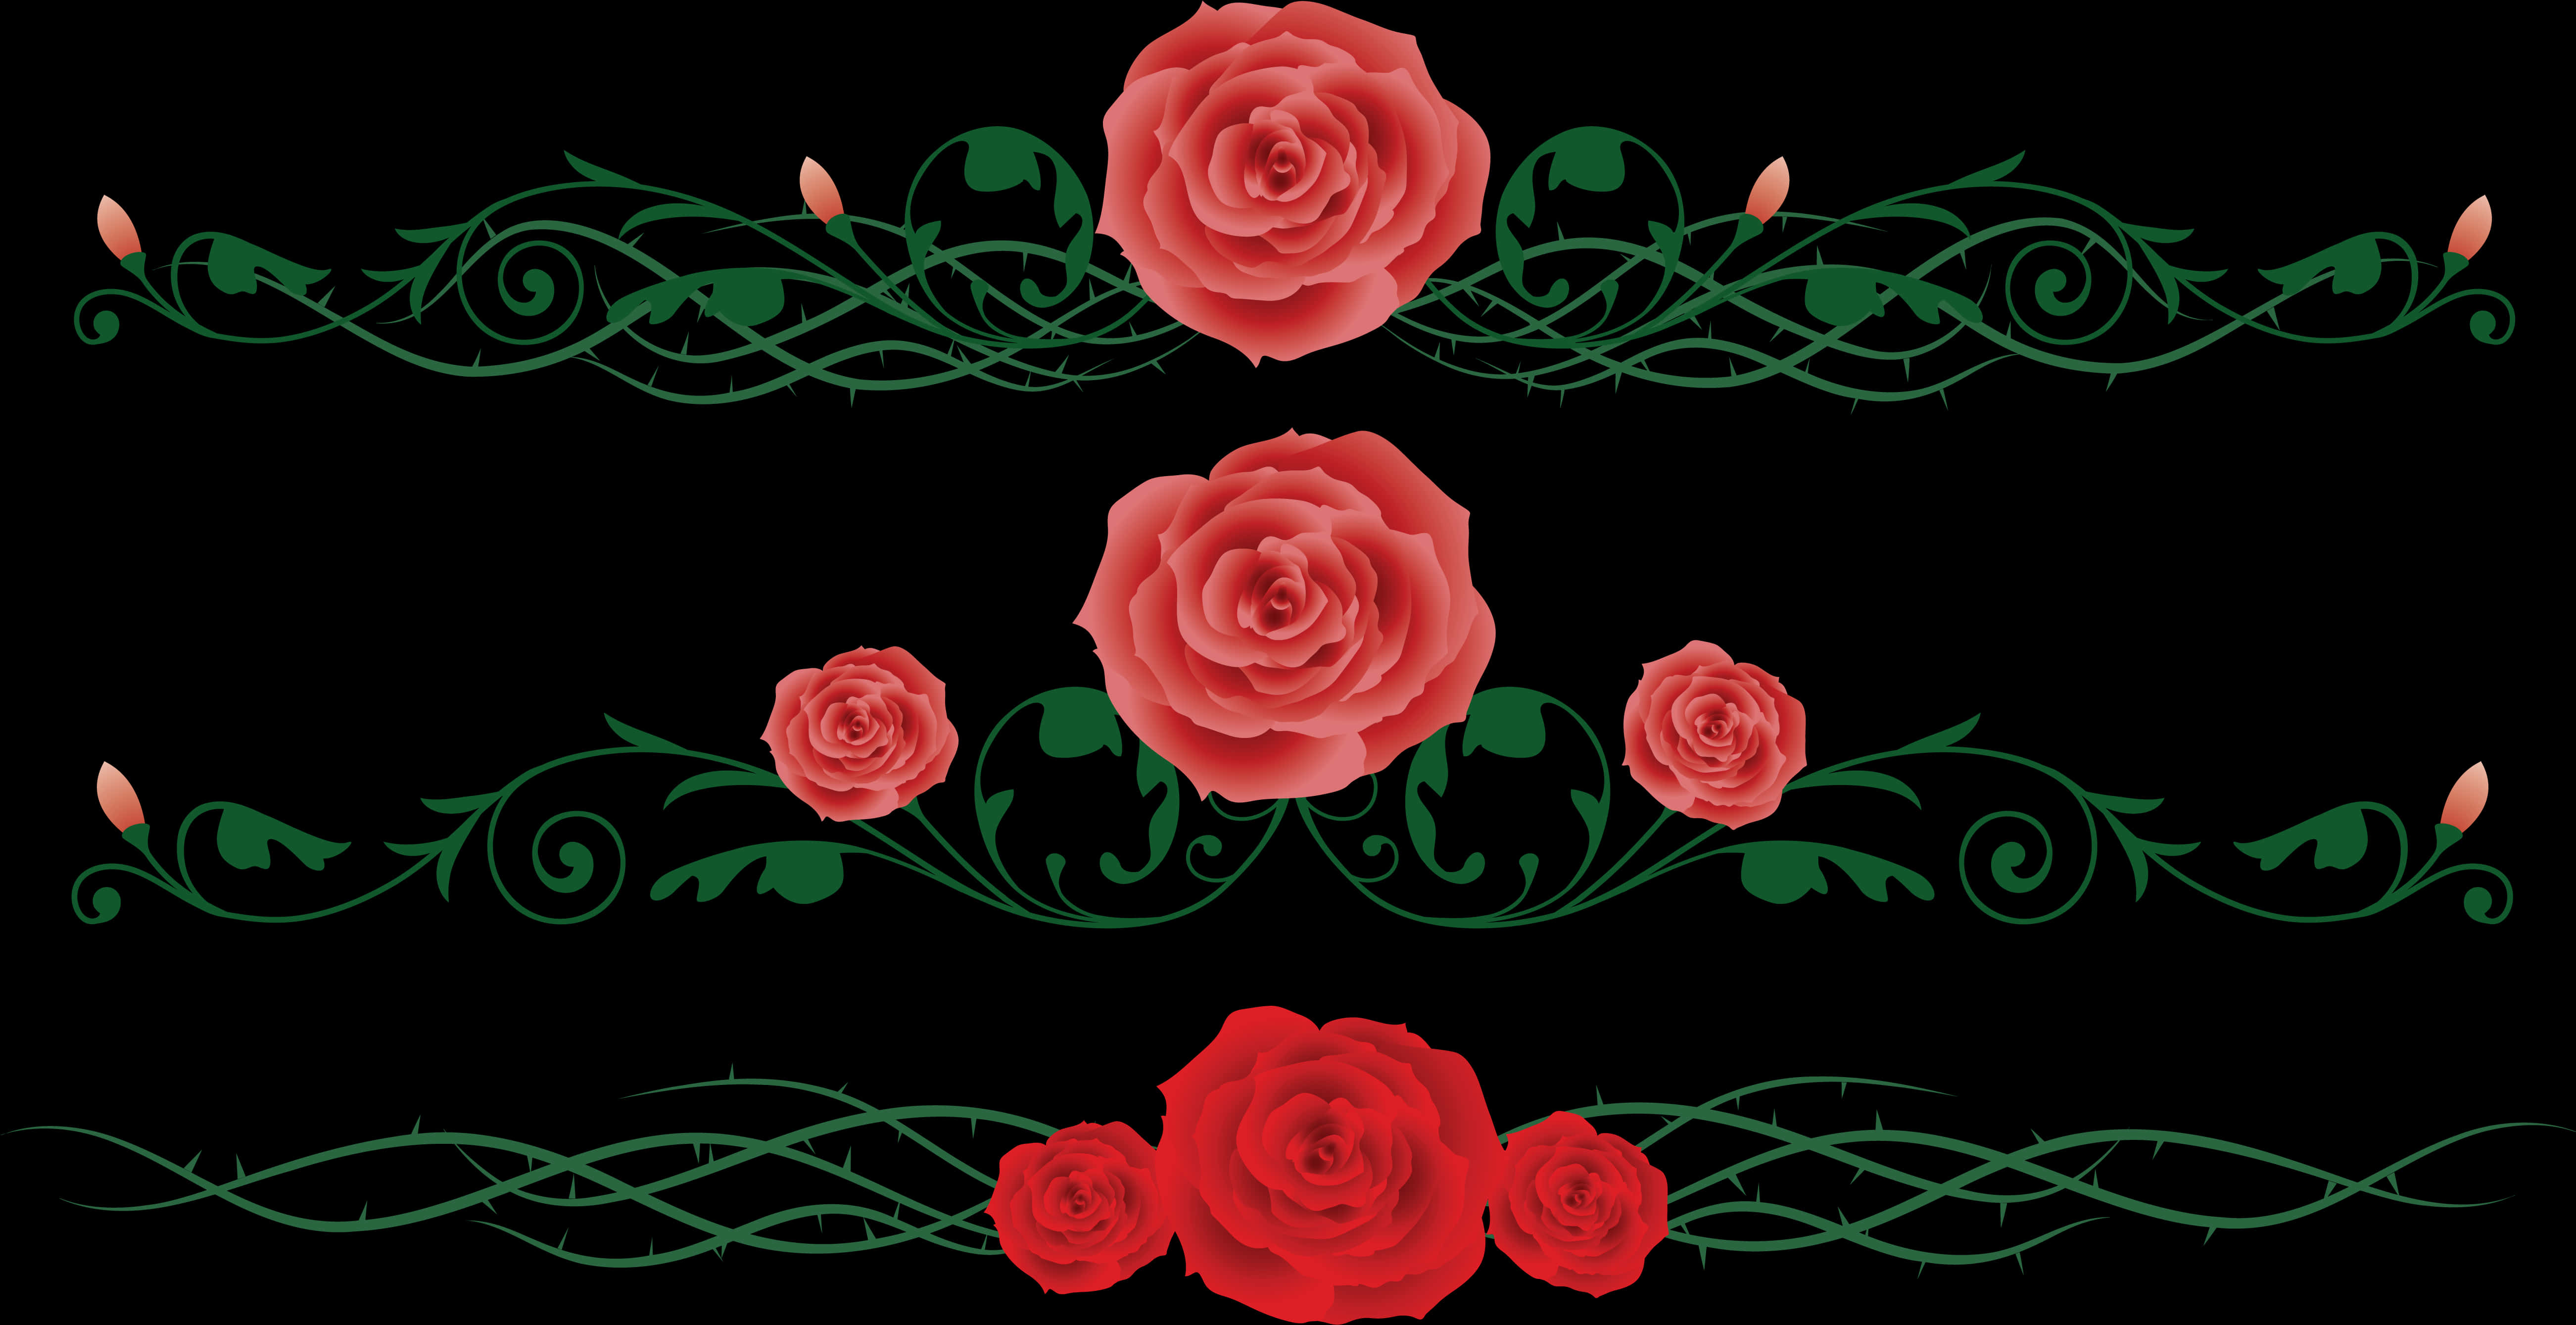 Rose Vine Floral Design